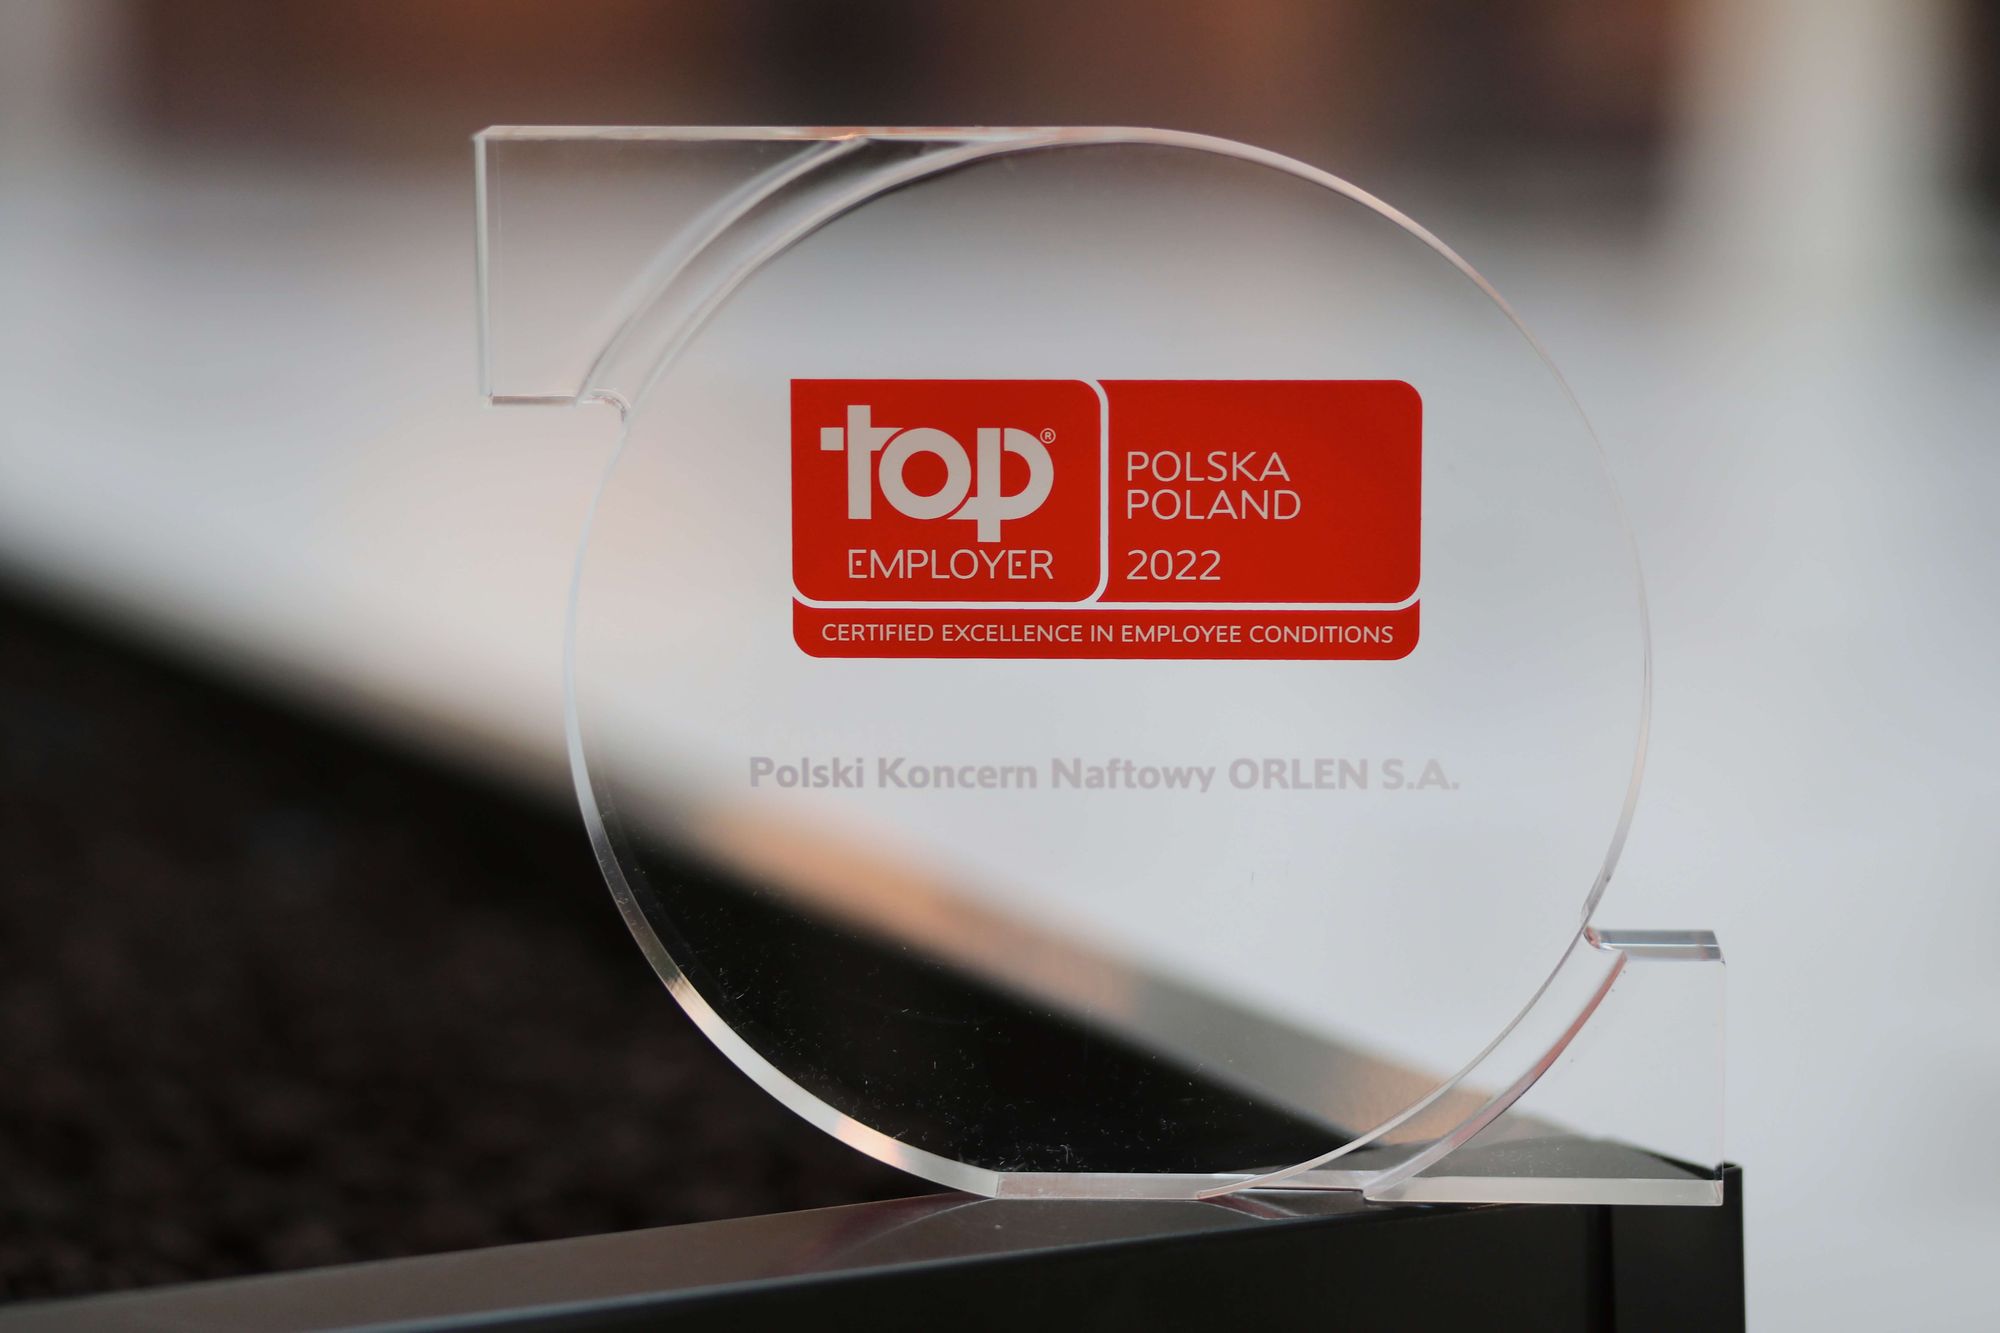 PKN ORLEN в 11-й раз вошла в число лучших работодателей 